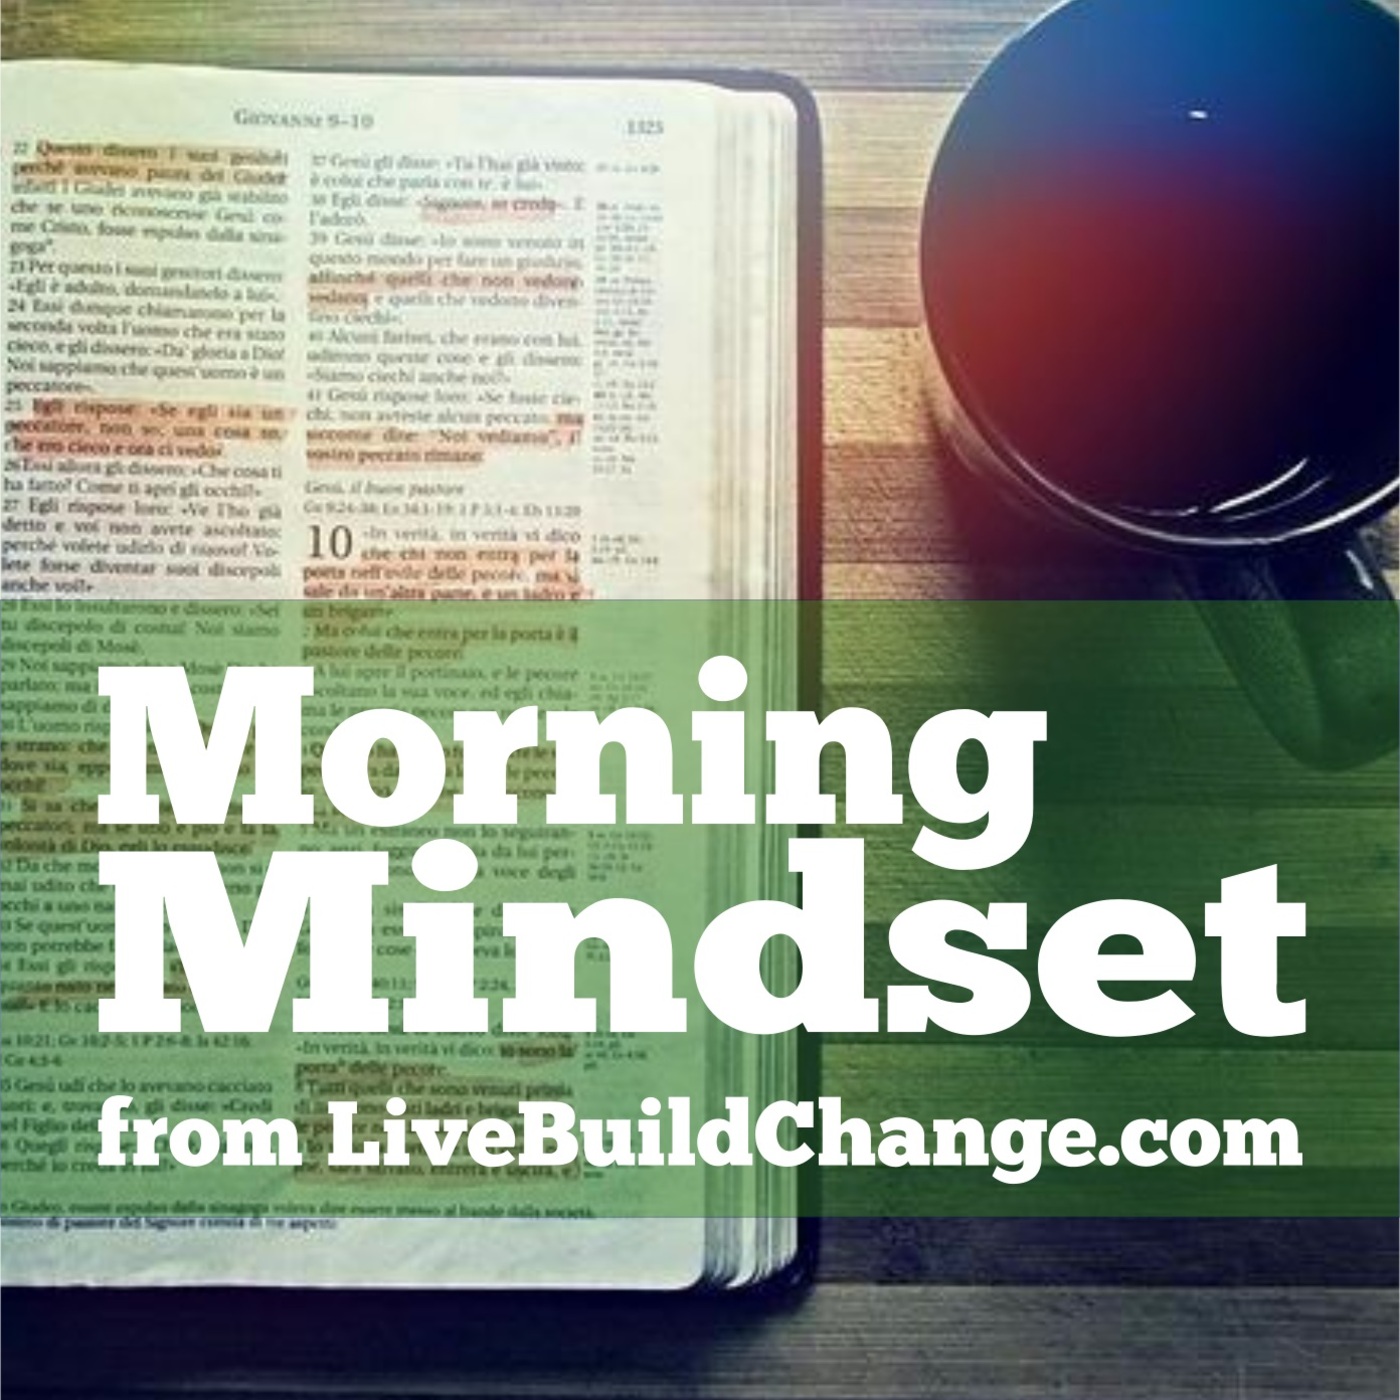 November 8 Morning Mindset from Live Build Change